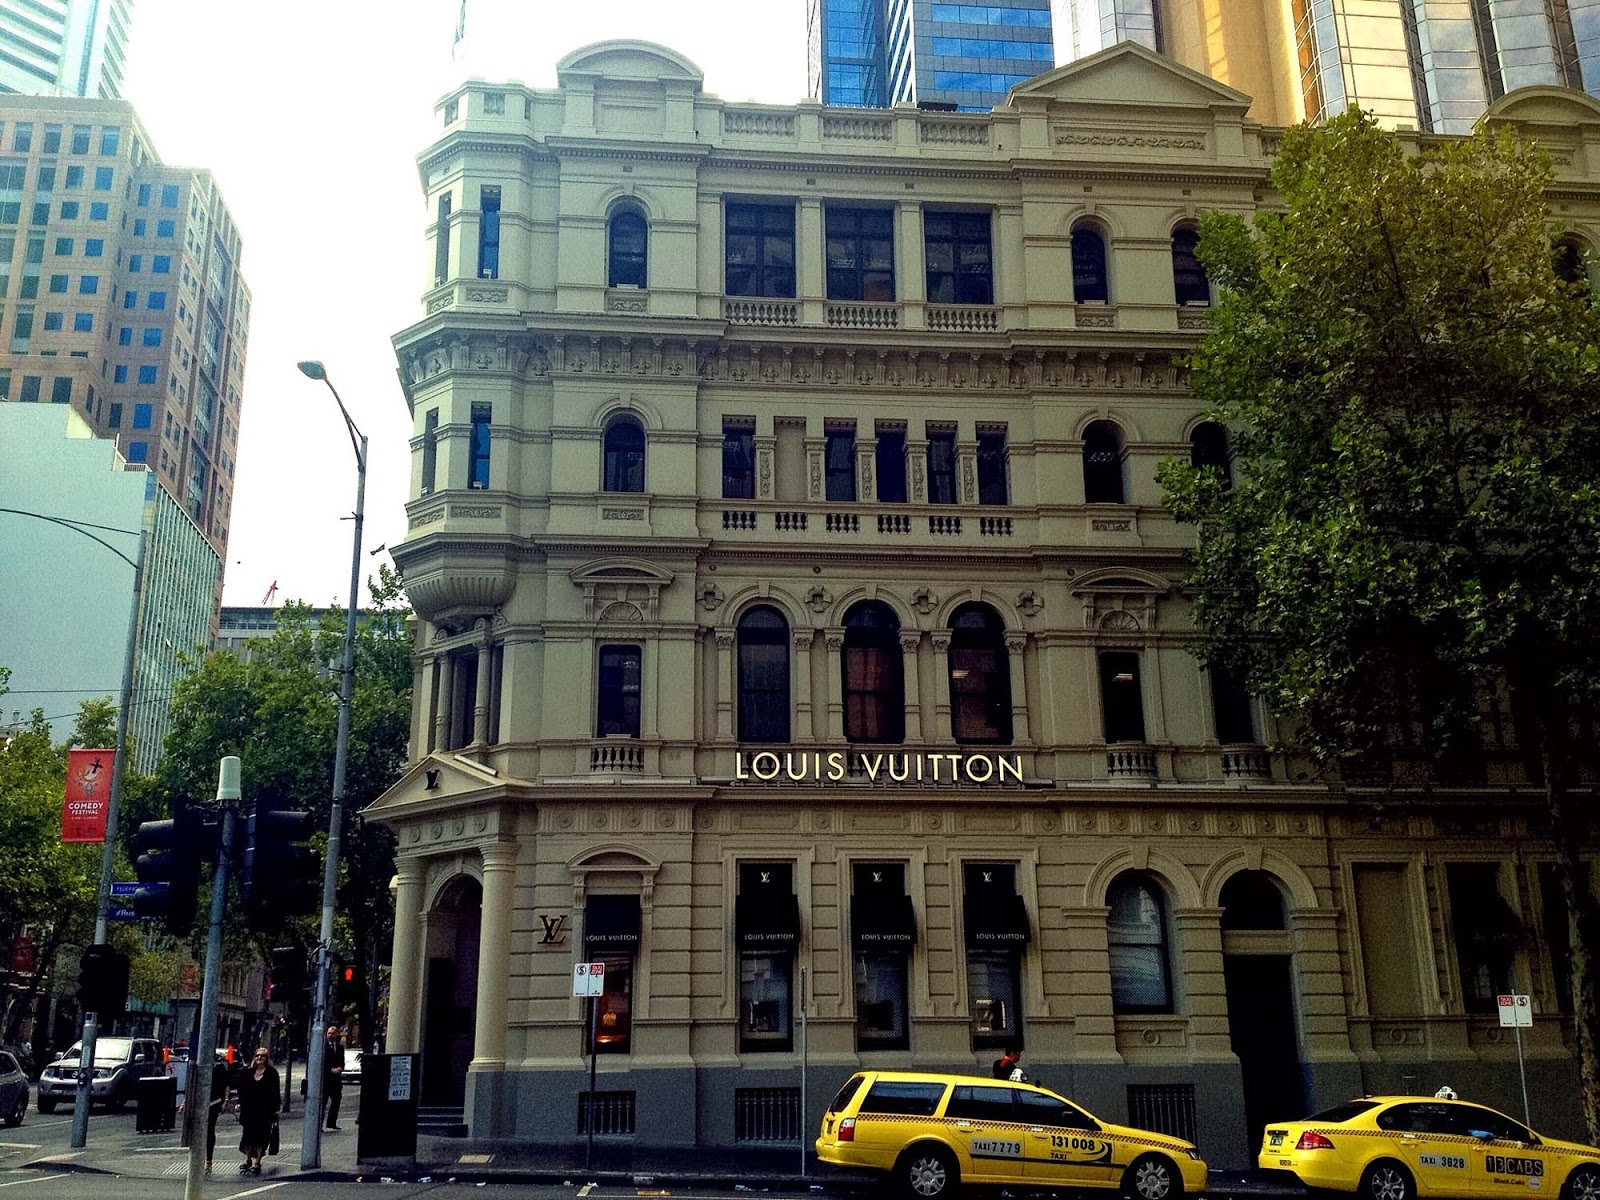 Melbourne Architecture: Louis Vuitton | Explore Shaw